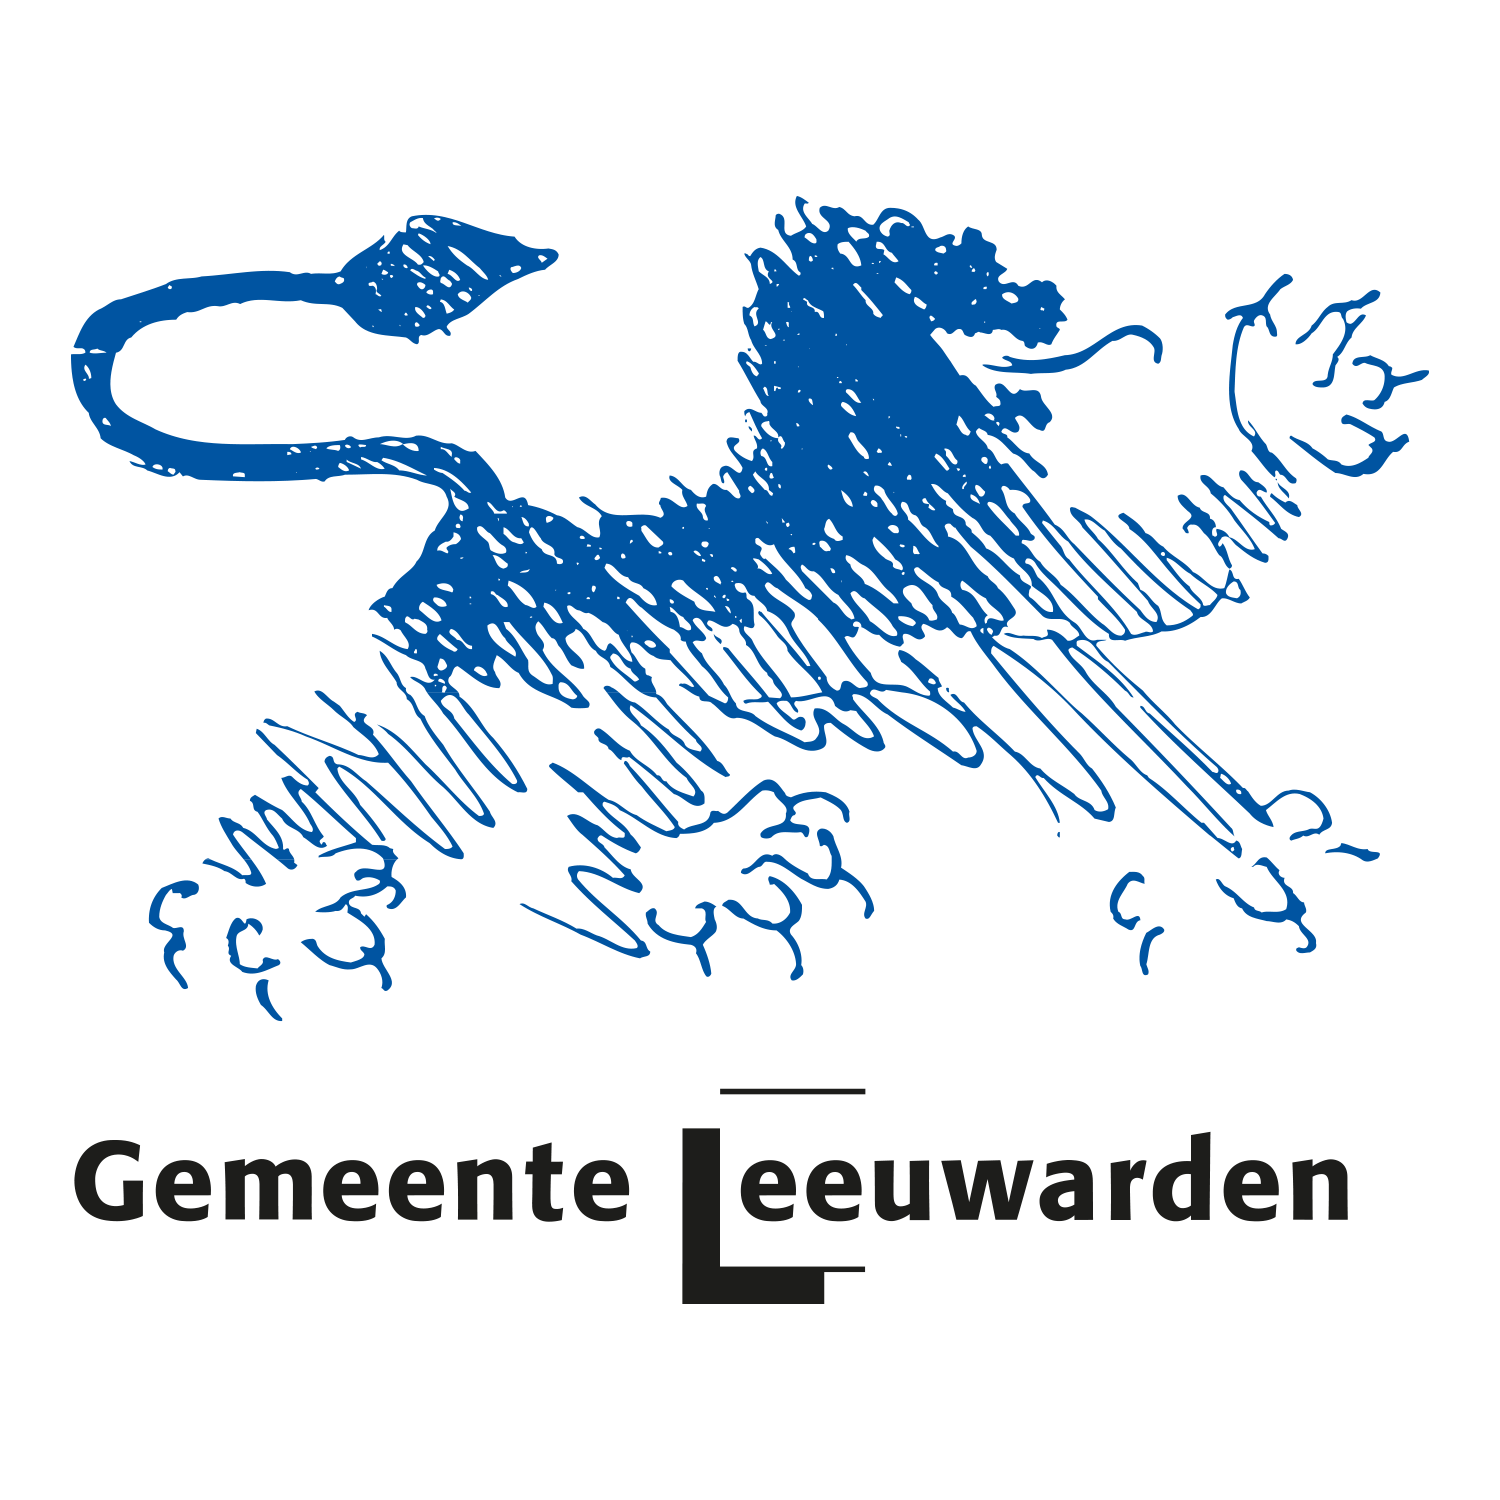 Municipality of Leeuwarden